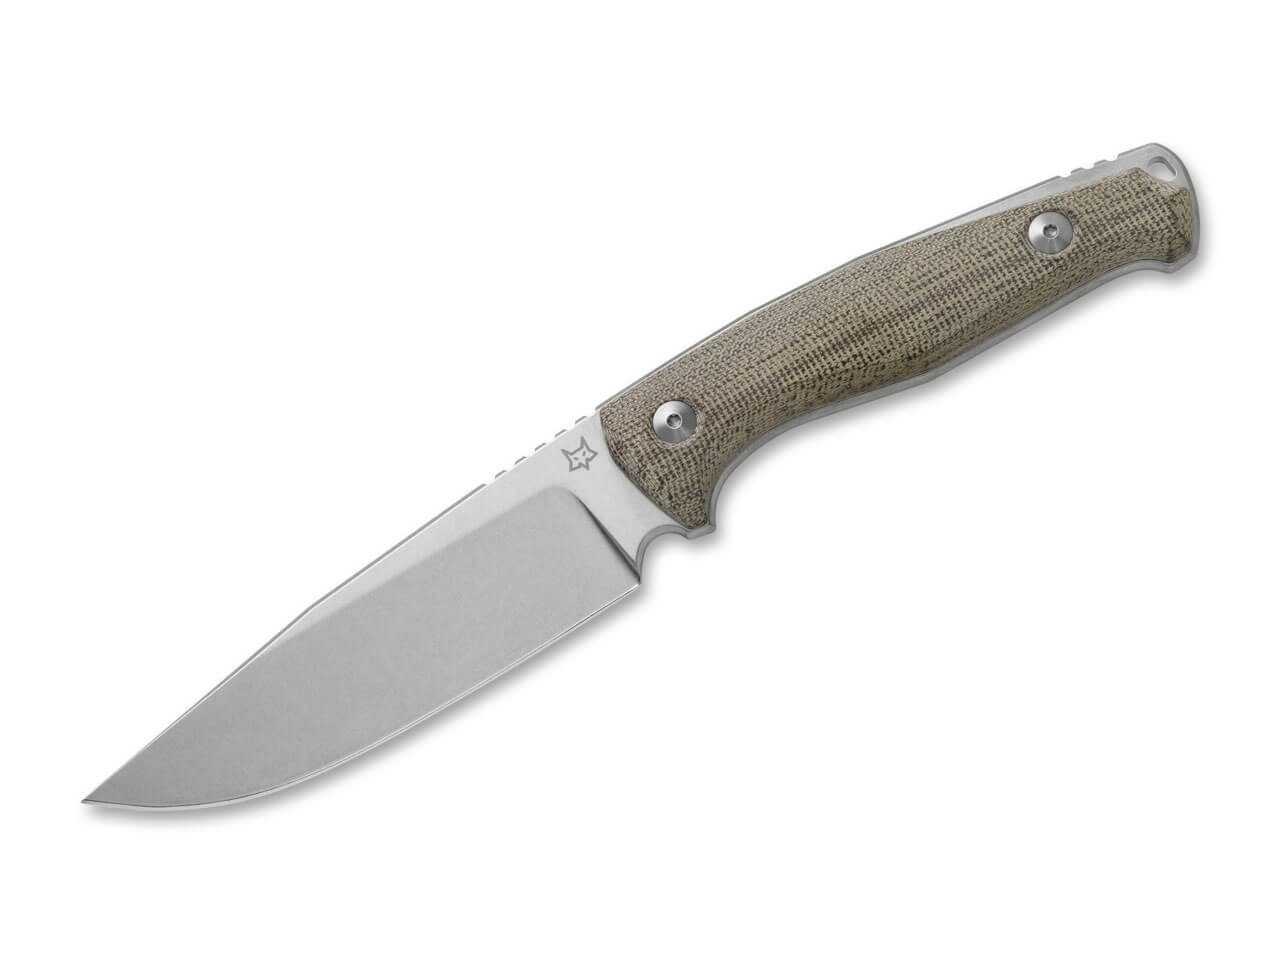 Fox Knives Universalmesser Fox Knives TUR OD Green feststehendes Messer mit Scheide grau, braun